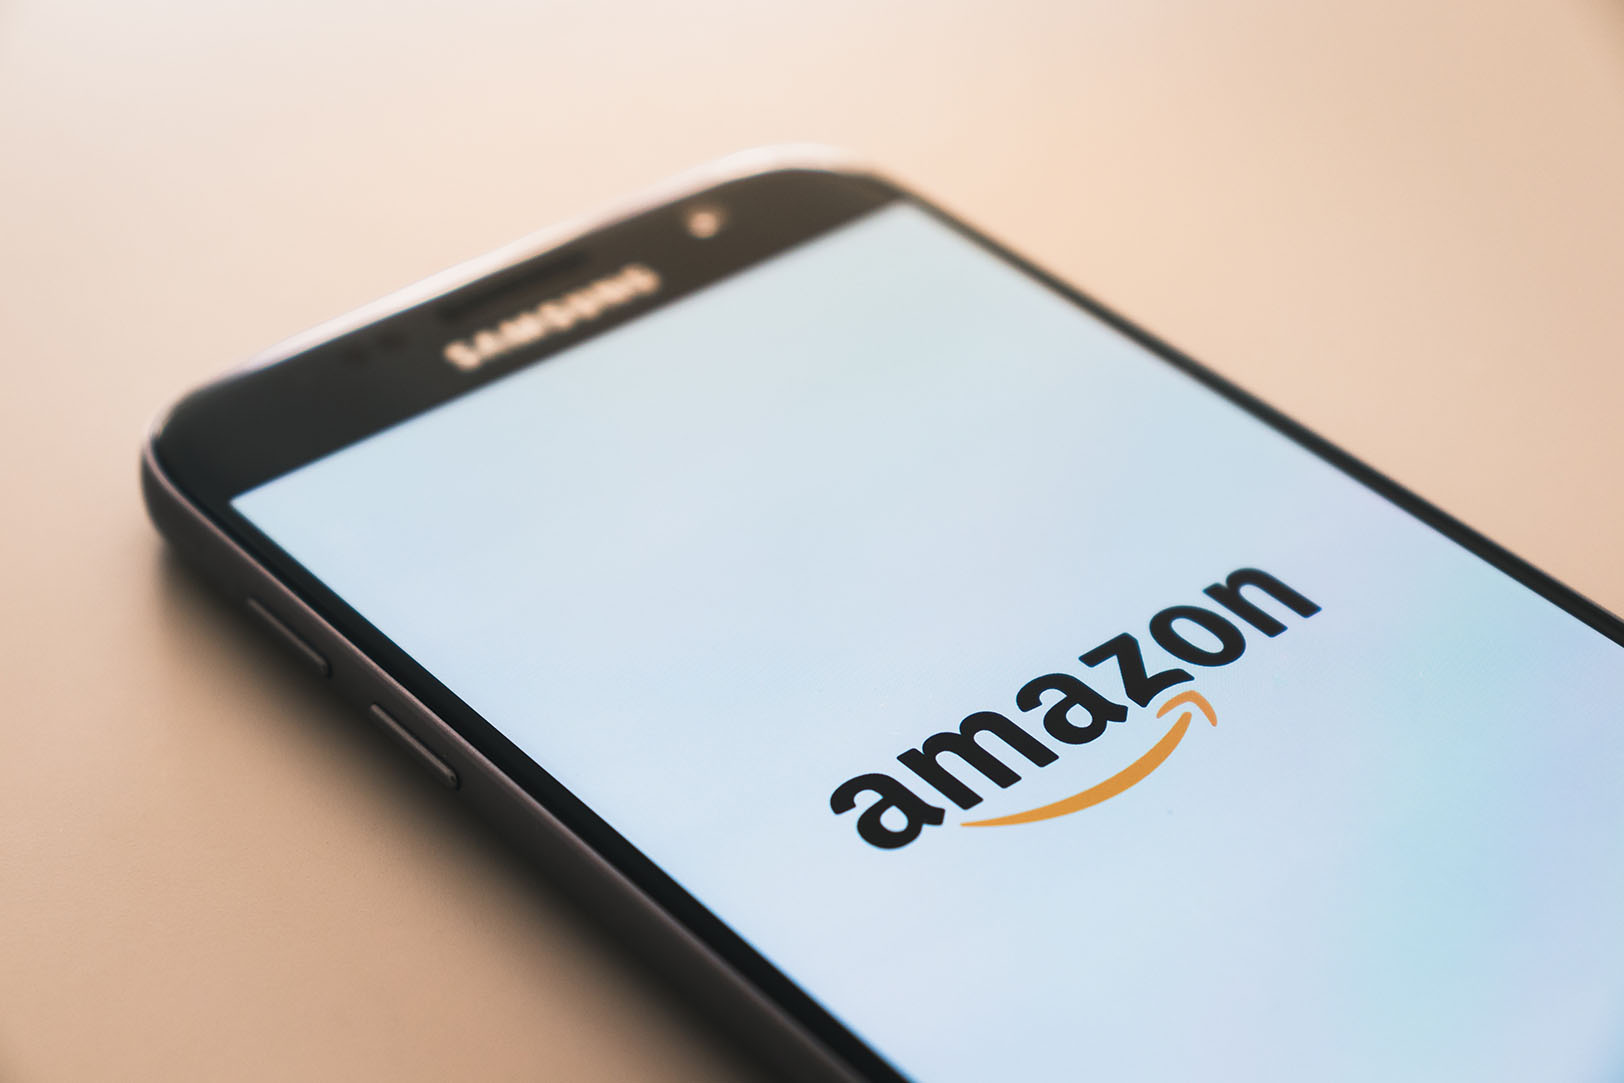 KC-based Sellozo opens upgraded analytics platform to Amazon sellers